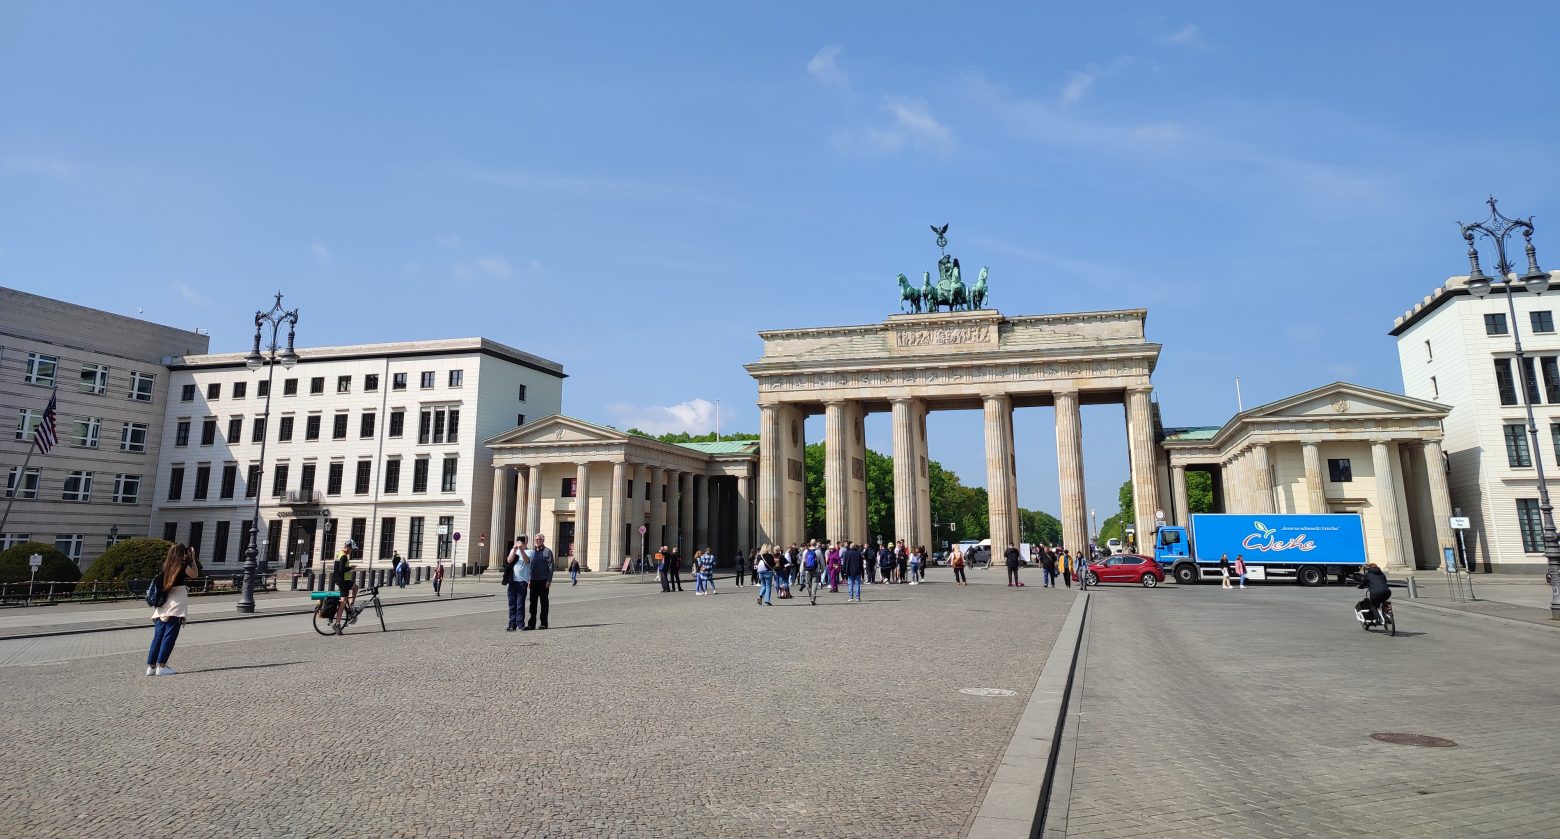 «Είμαι Βερολινέζος» – Οι άνθρωποι του Βερολίνου μιλούν στο in για τη ζωή και την πόλη τους